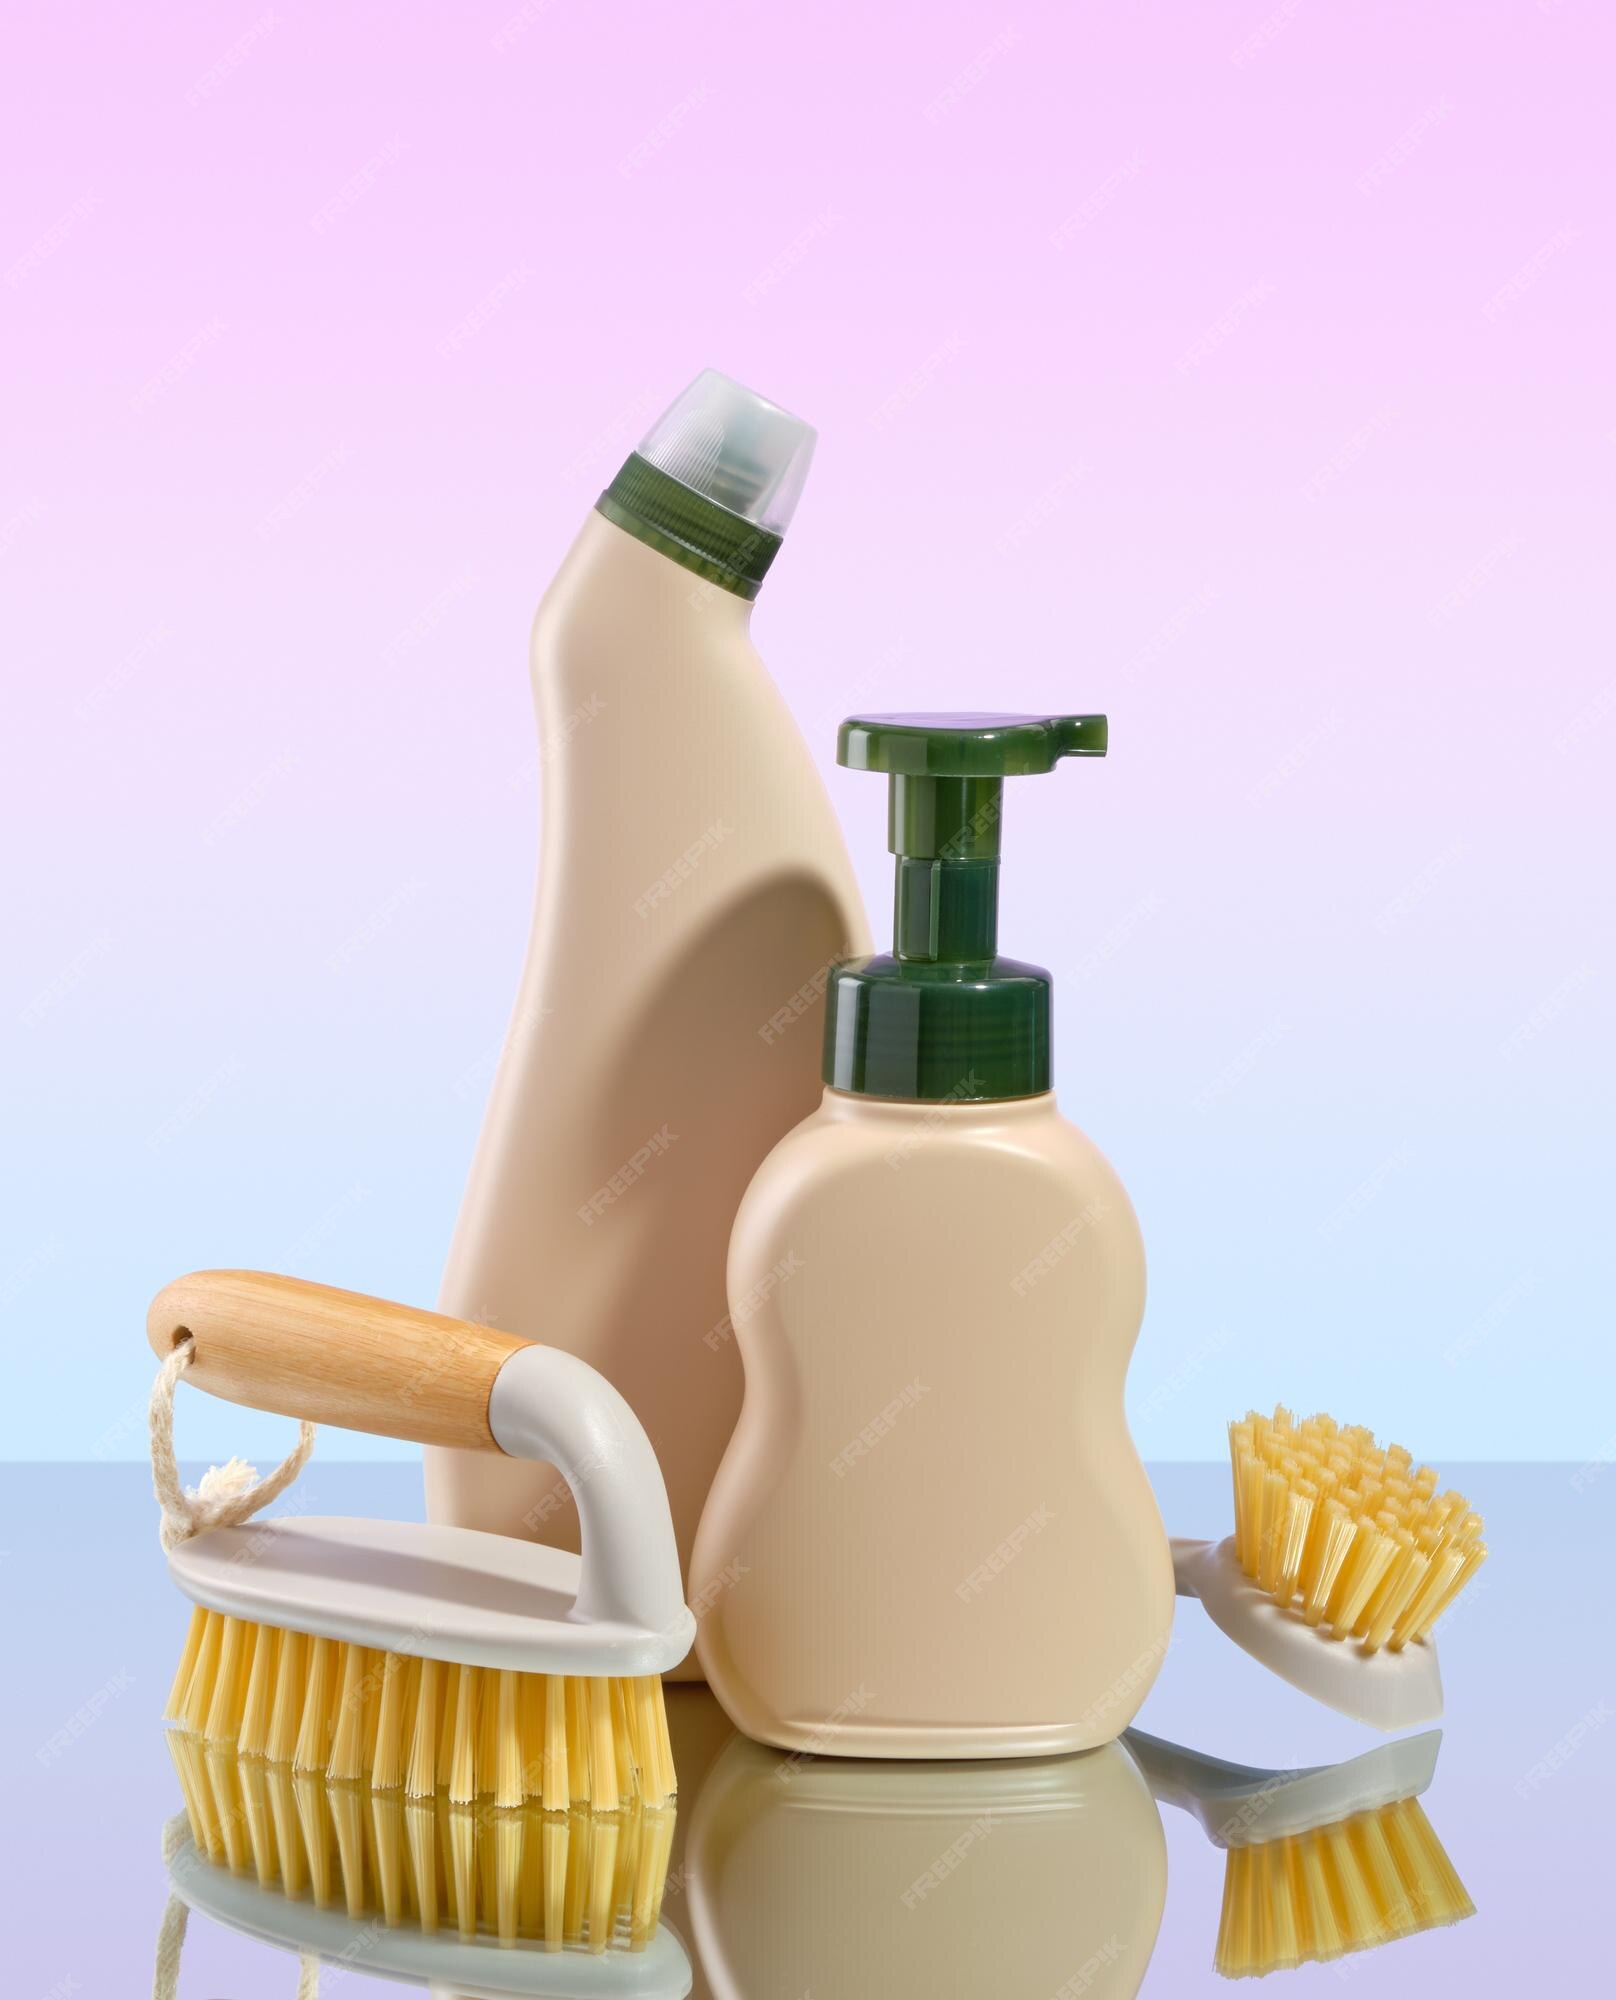 Productos de limpieza cepillos para la limpieza rutina del hogar